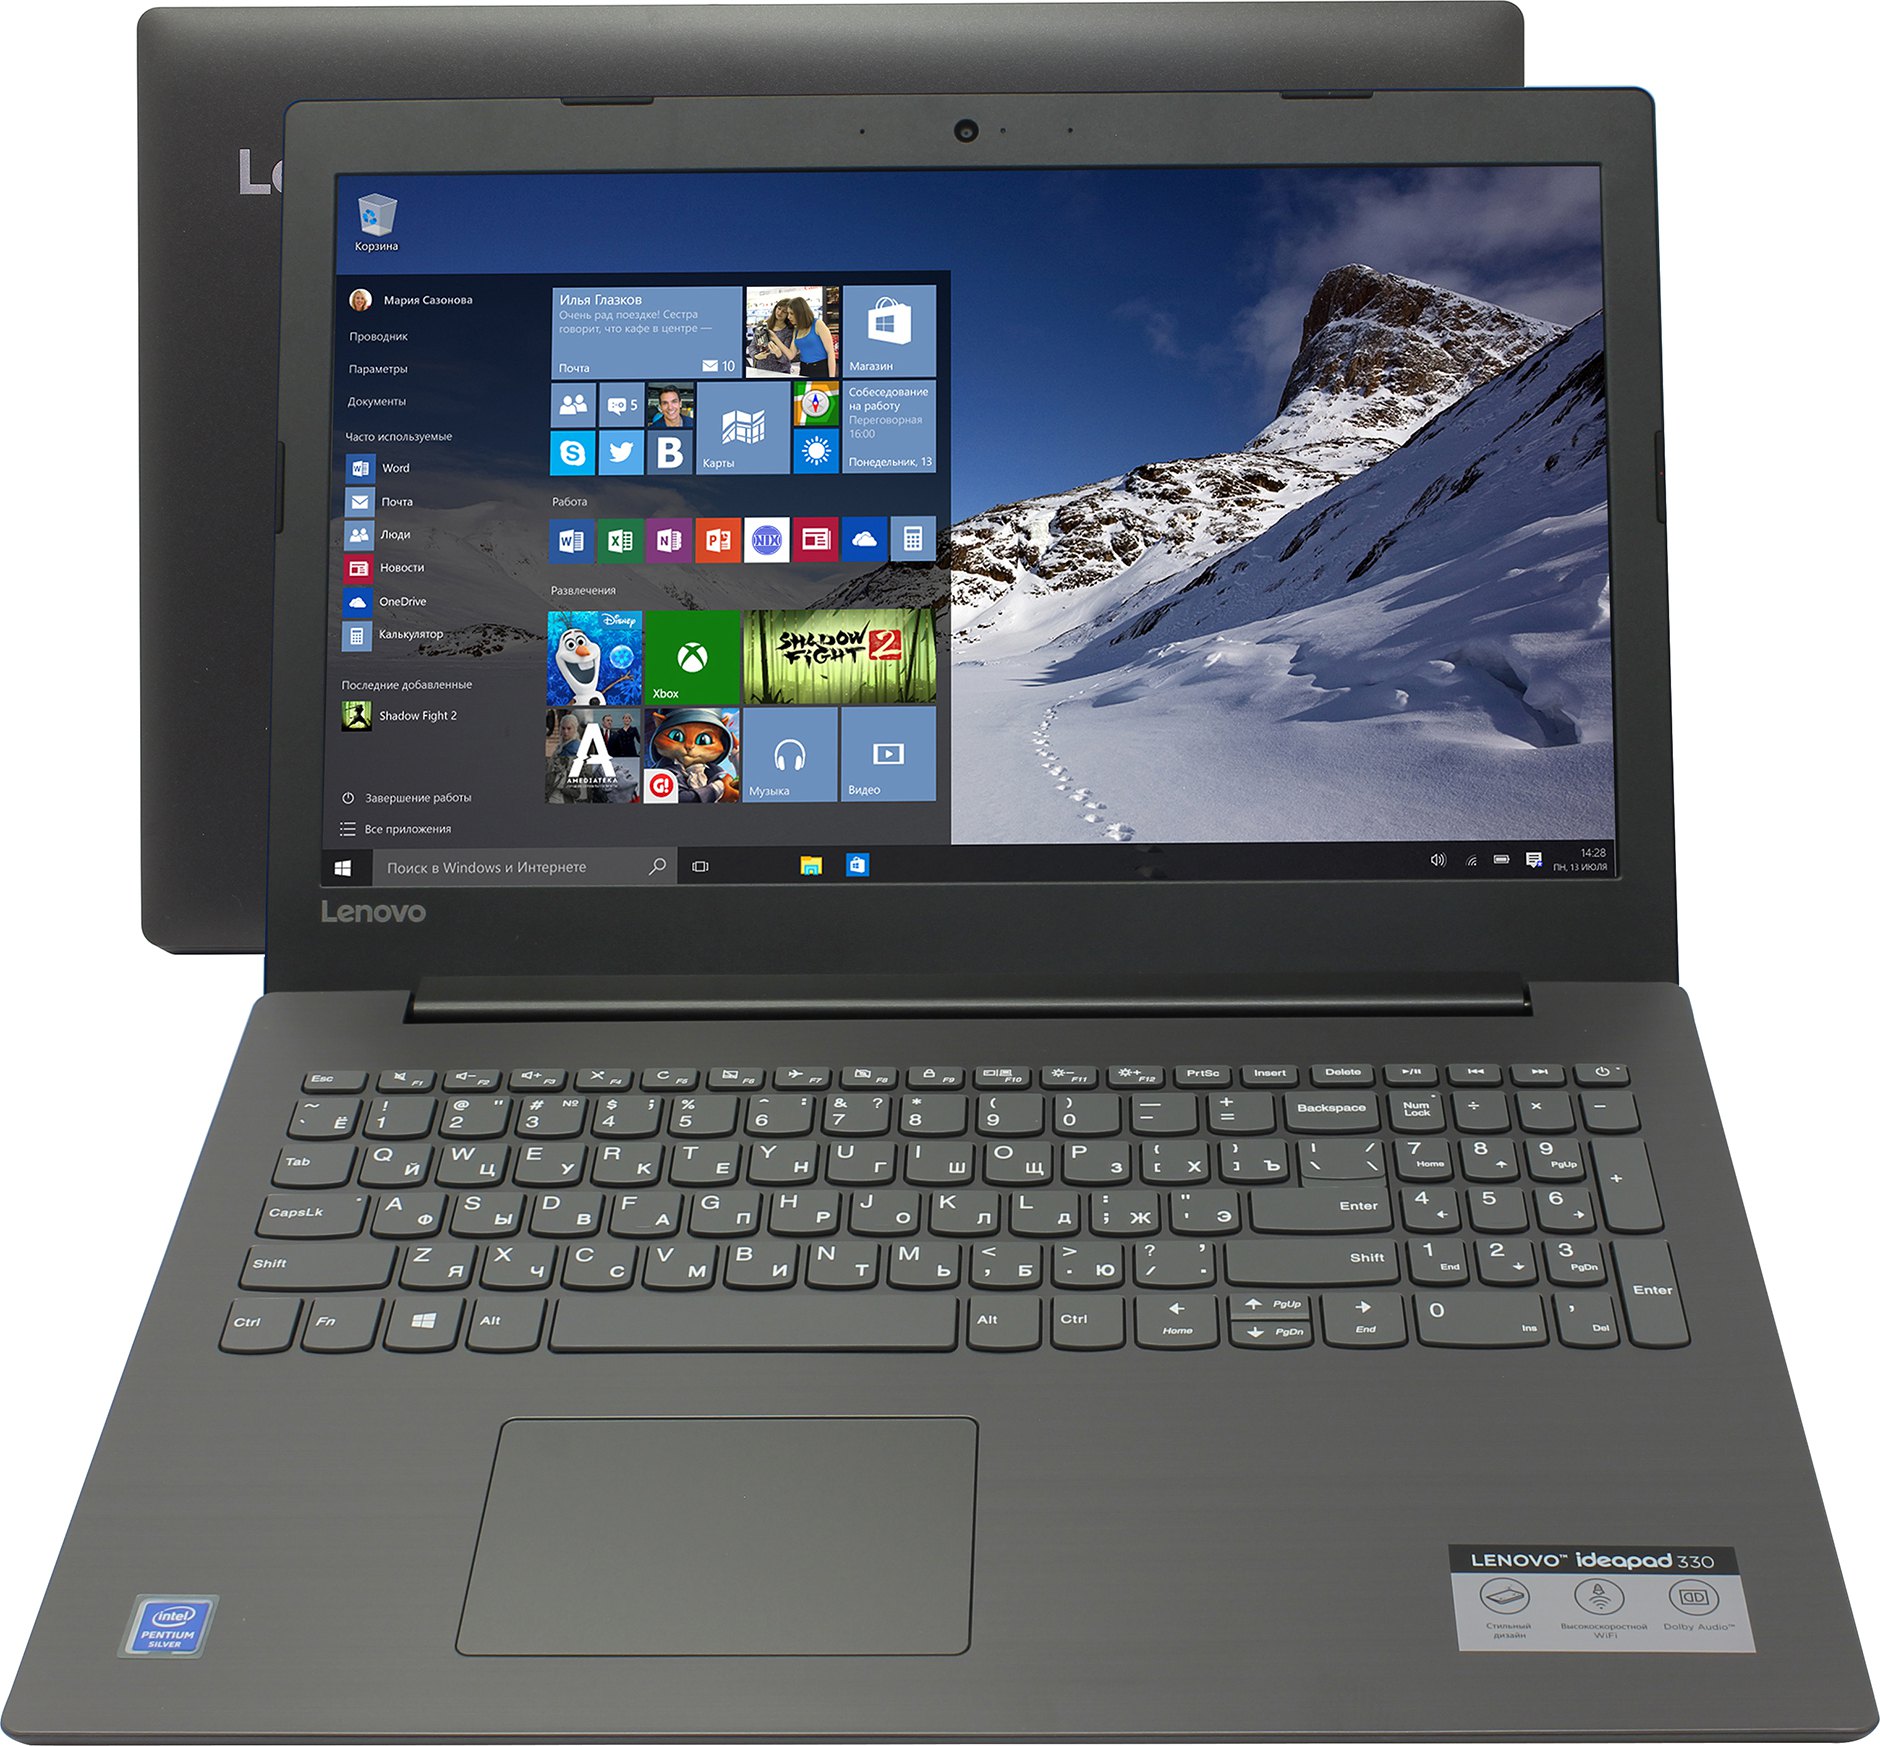 Ноутбук Lenovo IdeaPad 330-15IKBR Intel Core i5-8250U/8Gb/1Tb/128Gb SSD/15.6  FHD/GeForce MX150 2Gb/WiFi/BT/DOS  (81DE015JRU)